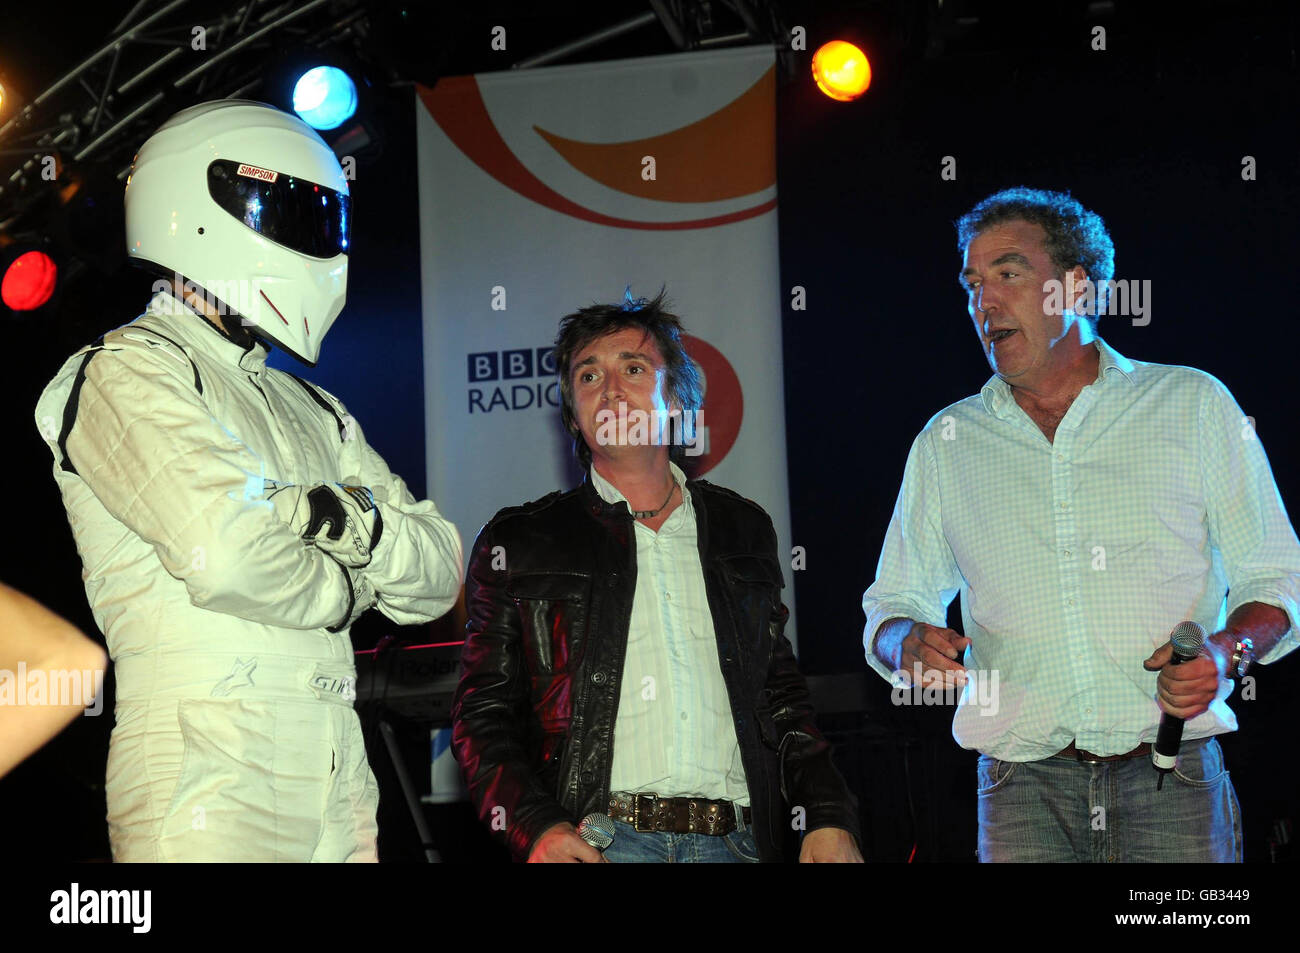 The Stig (à gauche), Richard Hammond (au centre) et Jeremy Clarkson du programme TV Top Gear lors de la cérémonie d'allumage des illuminations de Blackpool. Banque D'Images